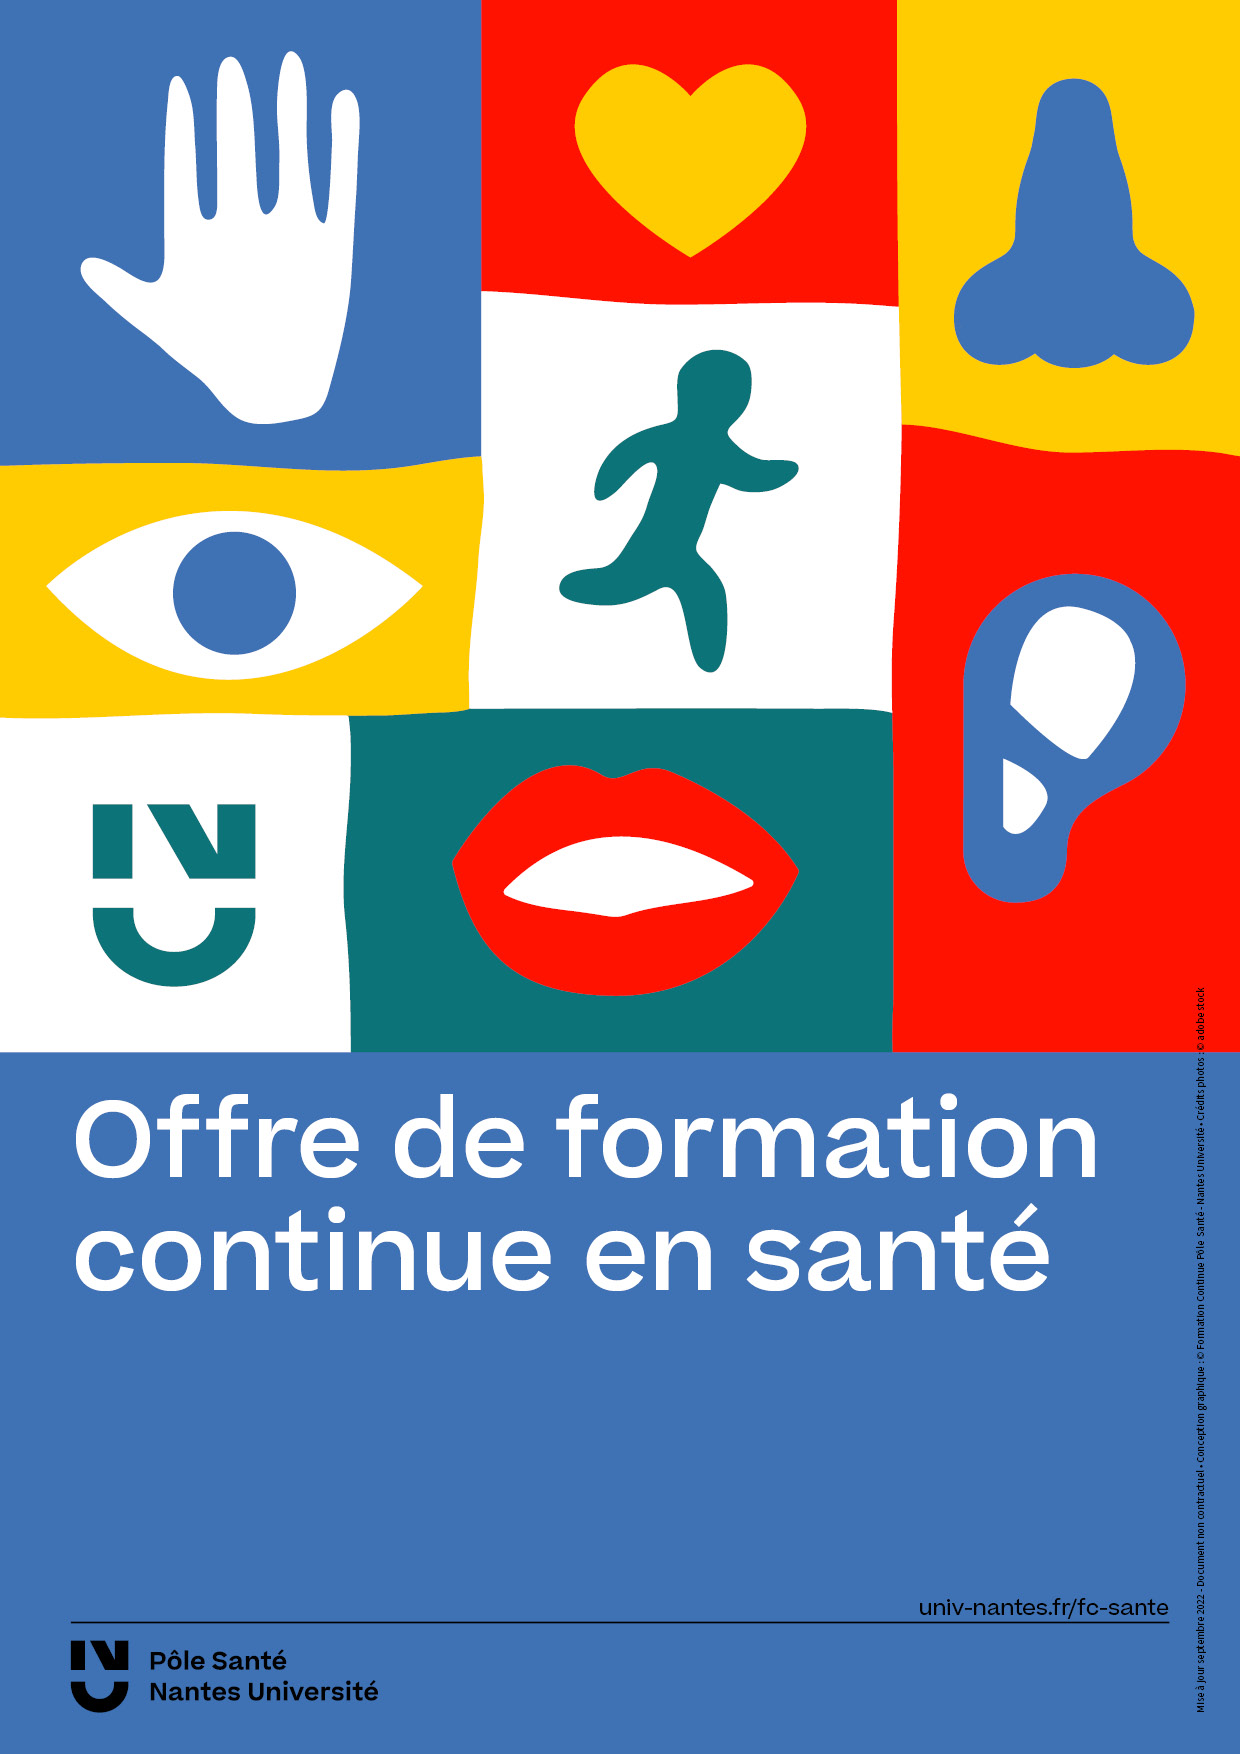 Visuel du catalogue de formation continue du Pôle Santé de Nantes Université